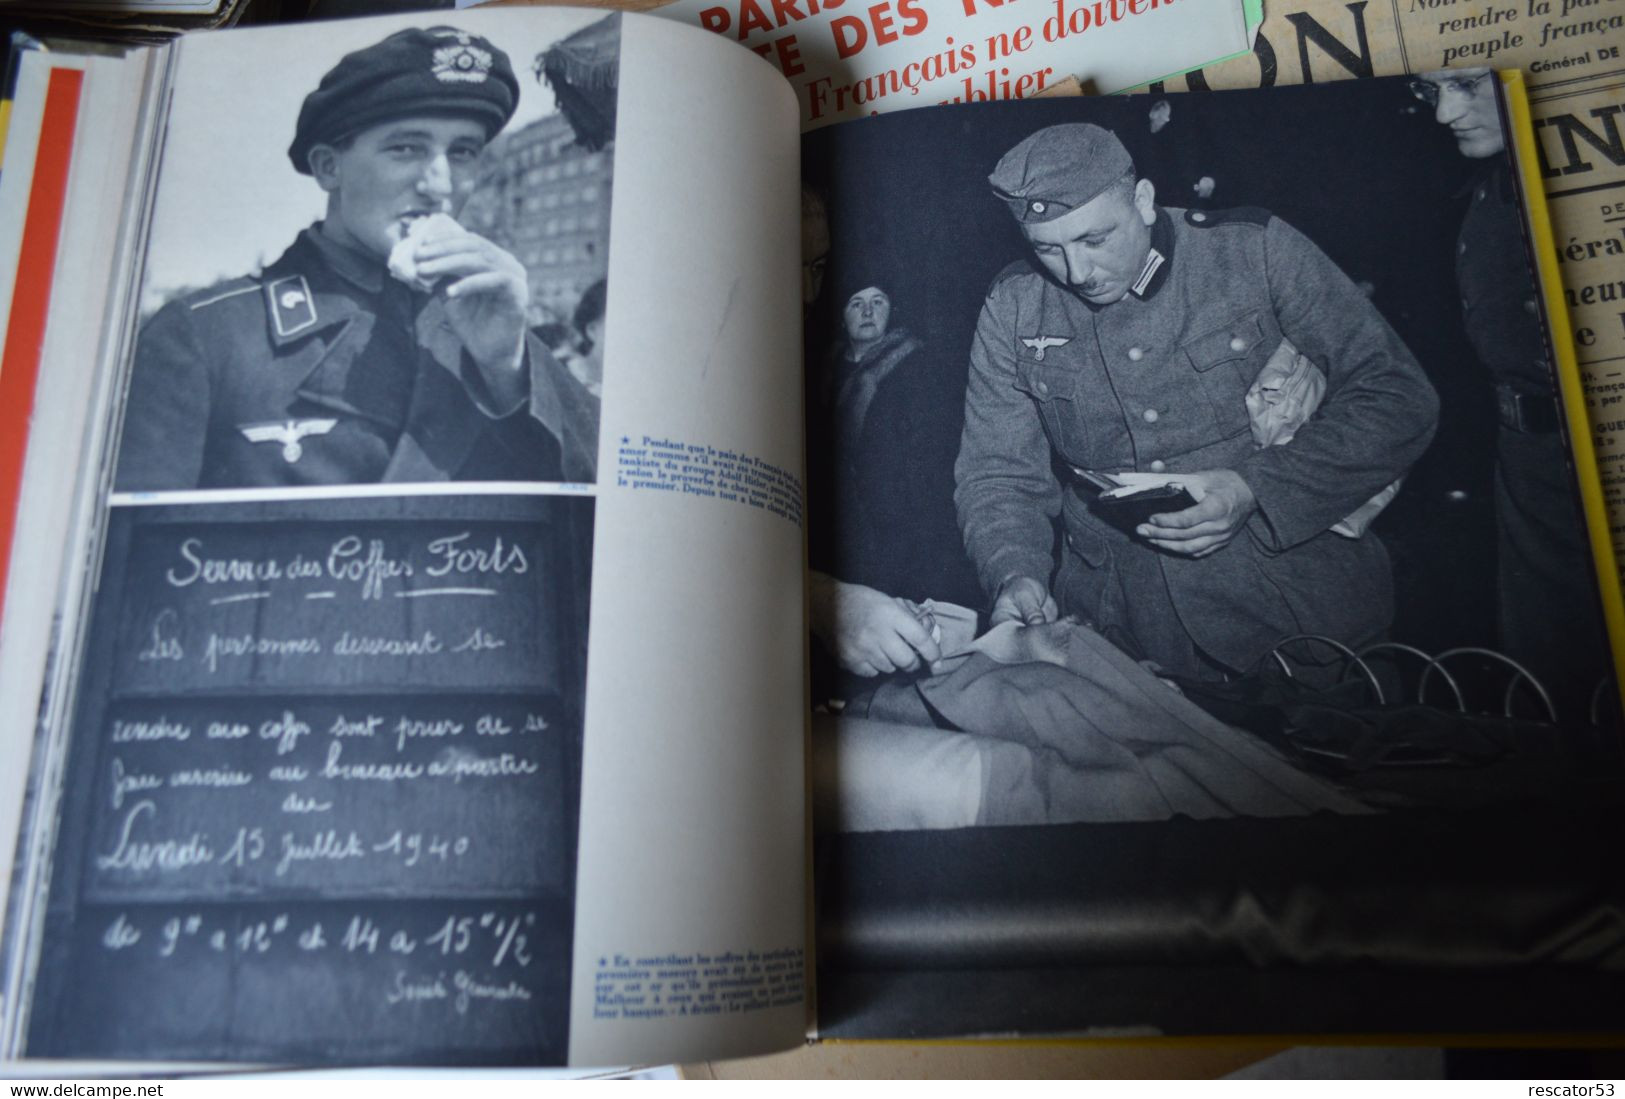 Documents - livre à Paris sous la botte des Nazis coffret numéroté ...